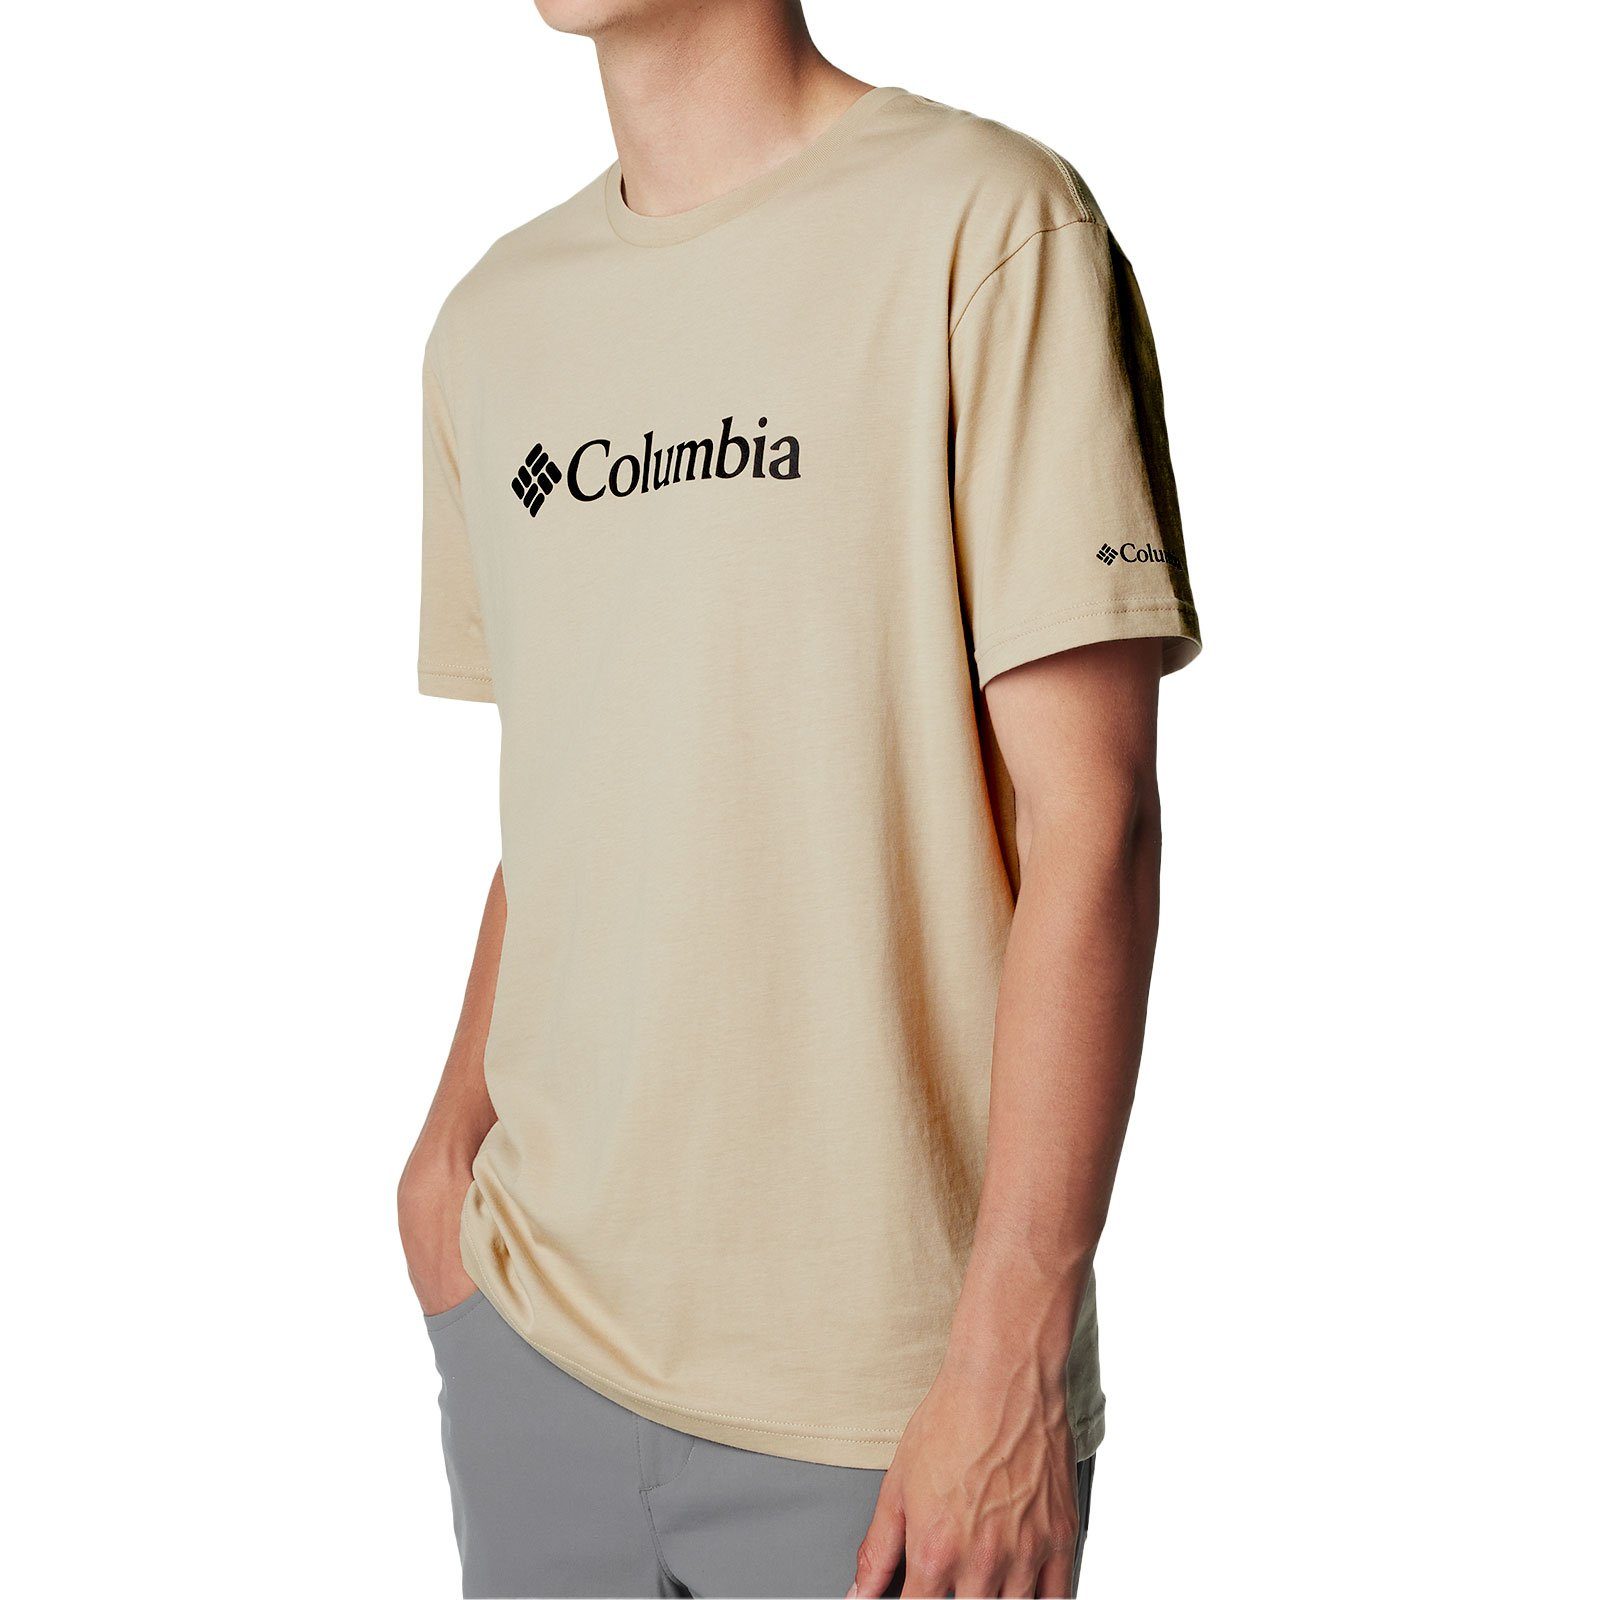 275 Kurzarmshirt fossil Columbia ancient Basic mit T-Shirt Rundhalsausschnitt Logo™